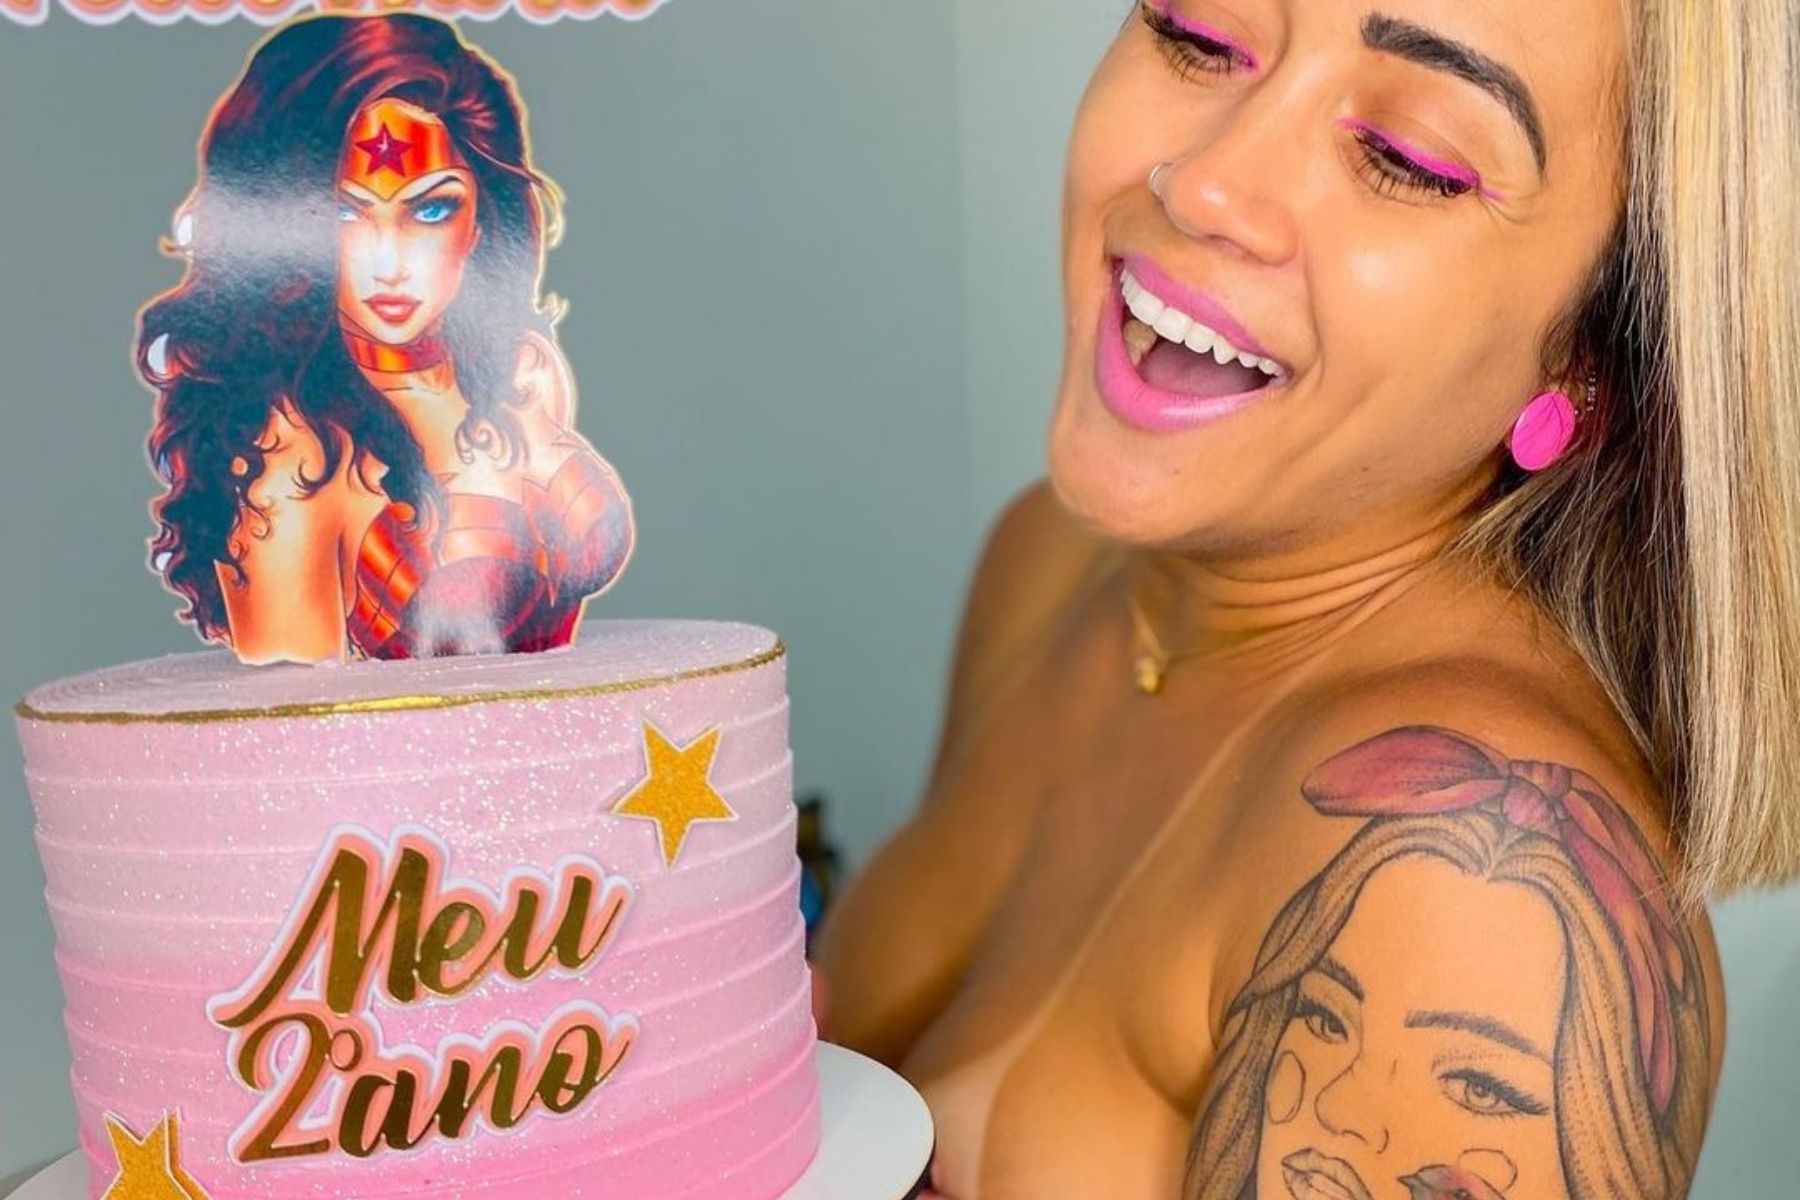 Pelo segundo ano consecutivo, a modelo Mithelly Cristina decidiu fazer uma festa de aniversário para celebrar o implante de silicone nas mamas